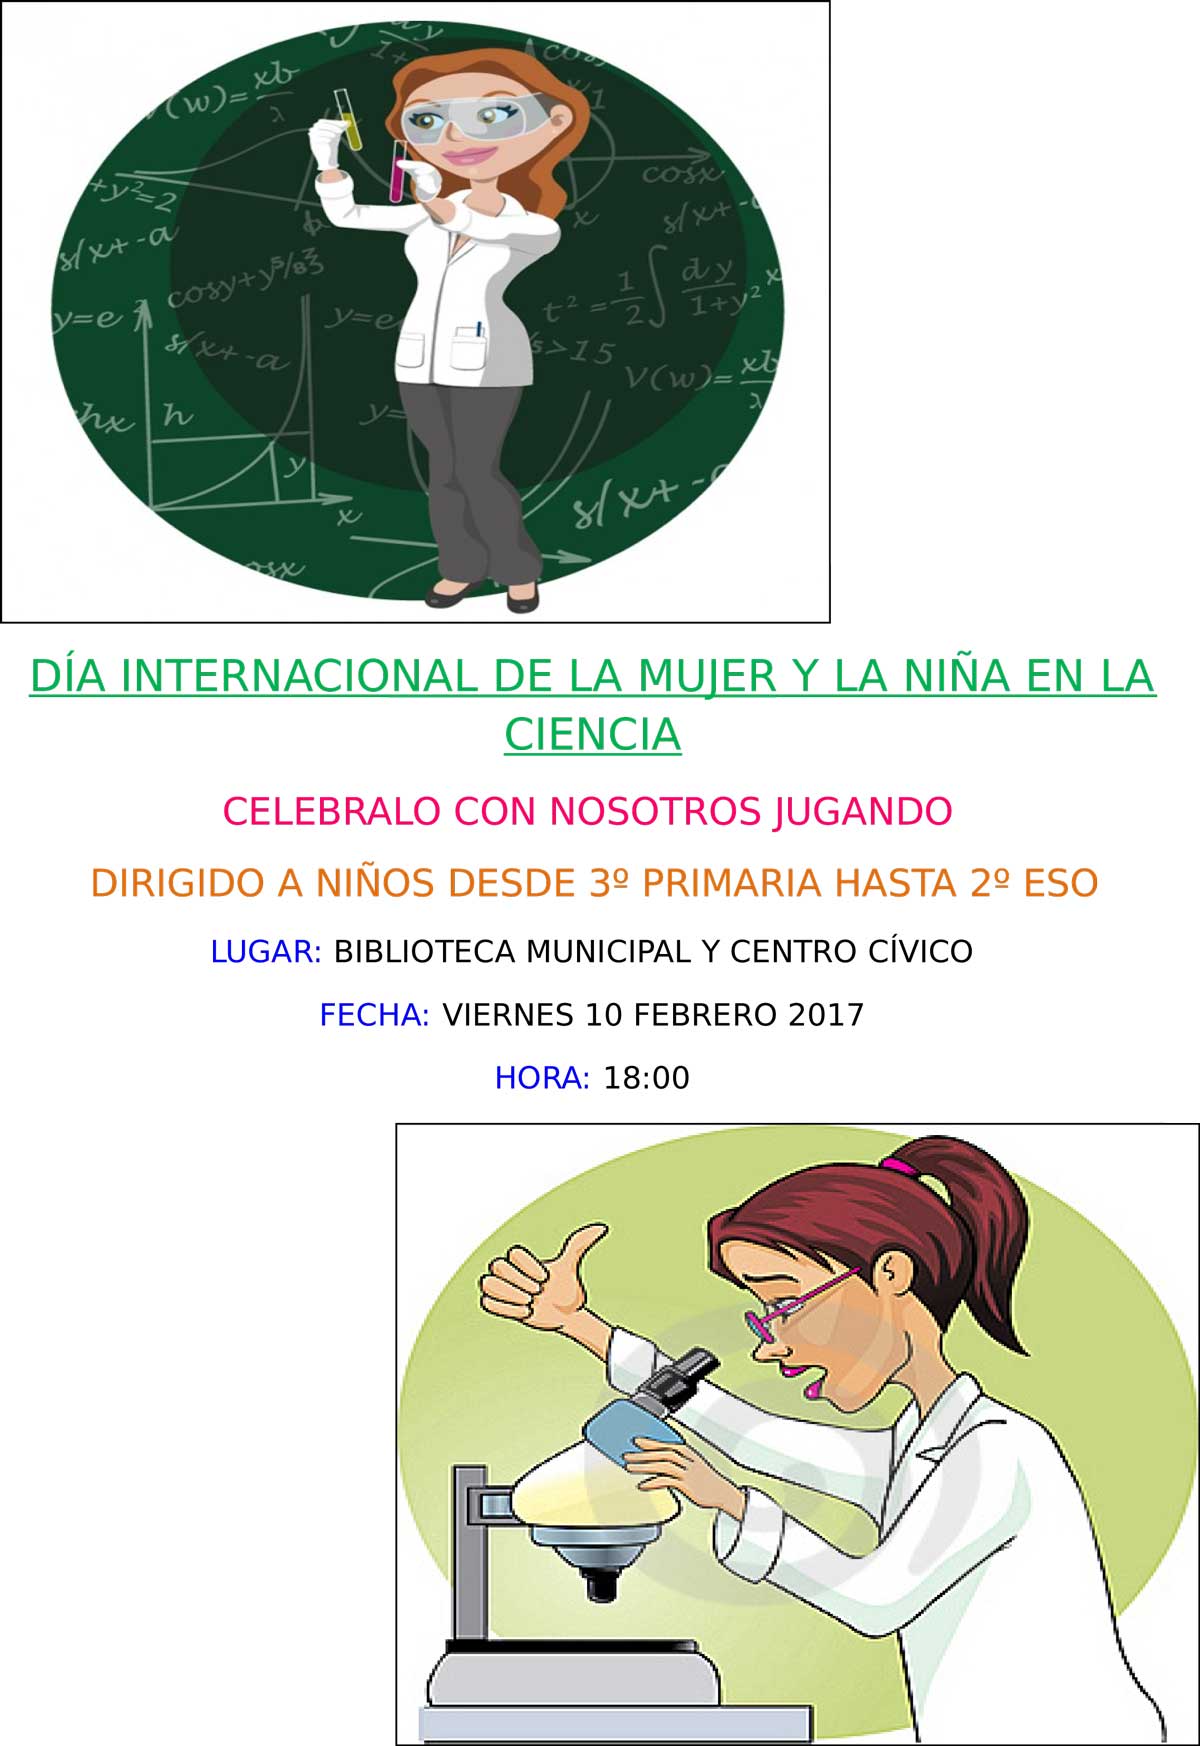 El Ayuntamiento organiza unas actividades para niños y adultos en el Día Internacional de la Mujer y la Niña en la Ciencia